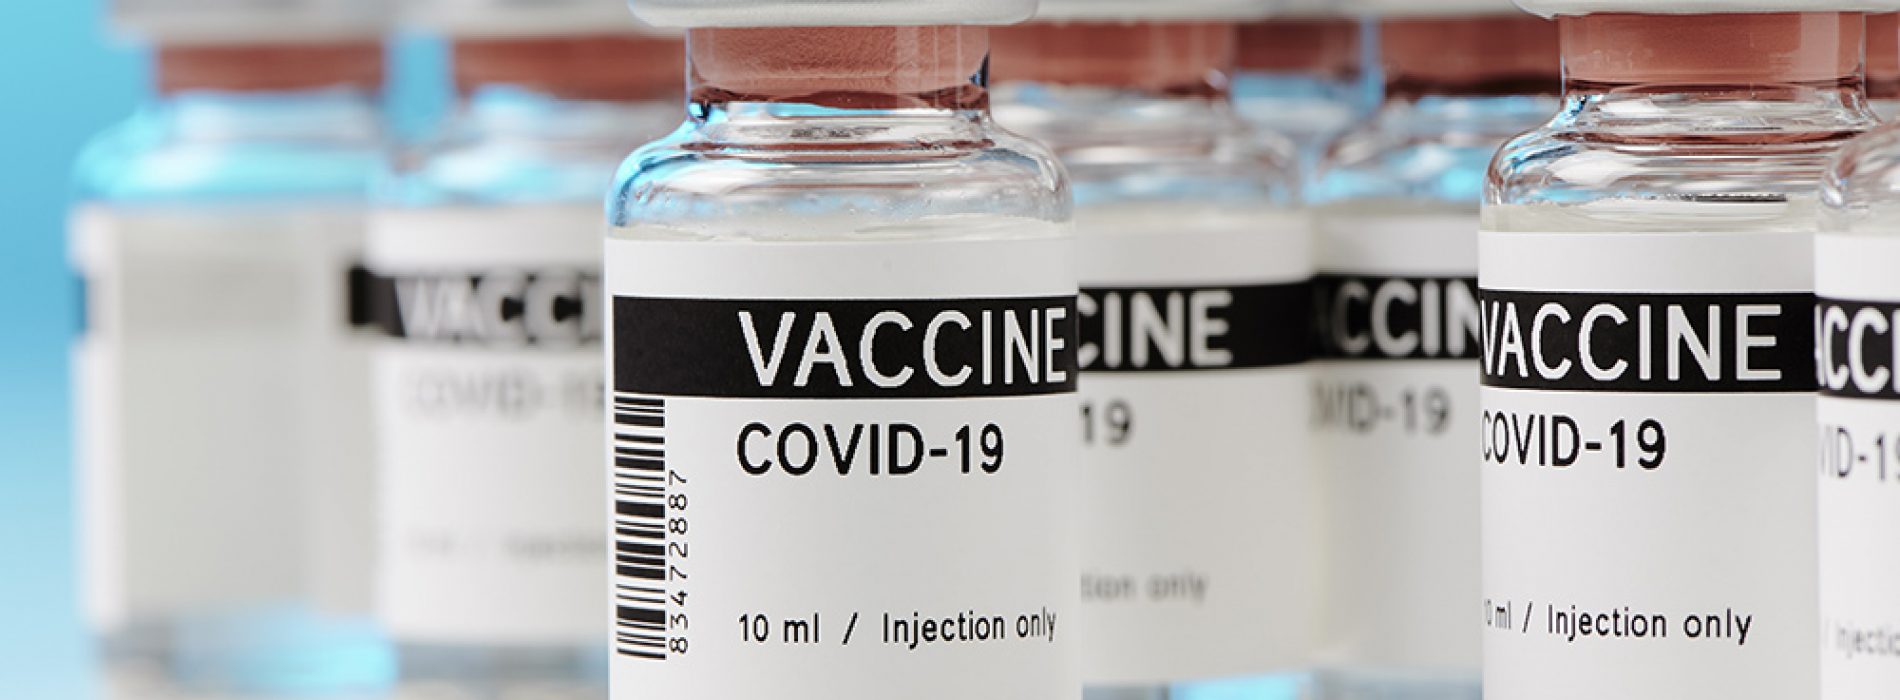 COVID-19-vaccins kunnen de wereldbevolking decimeren, waarschuwt microbioloog … en het gebeurt al in India en Brazilië